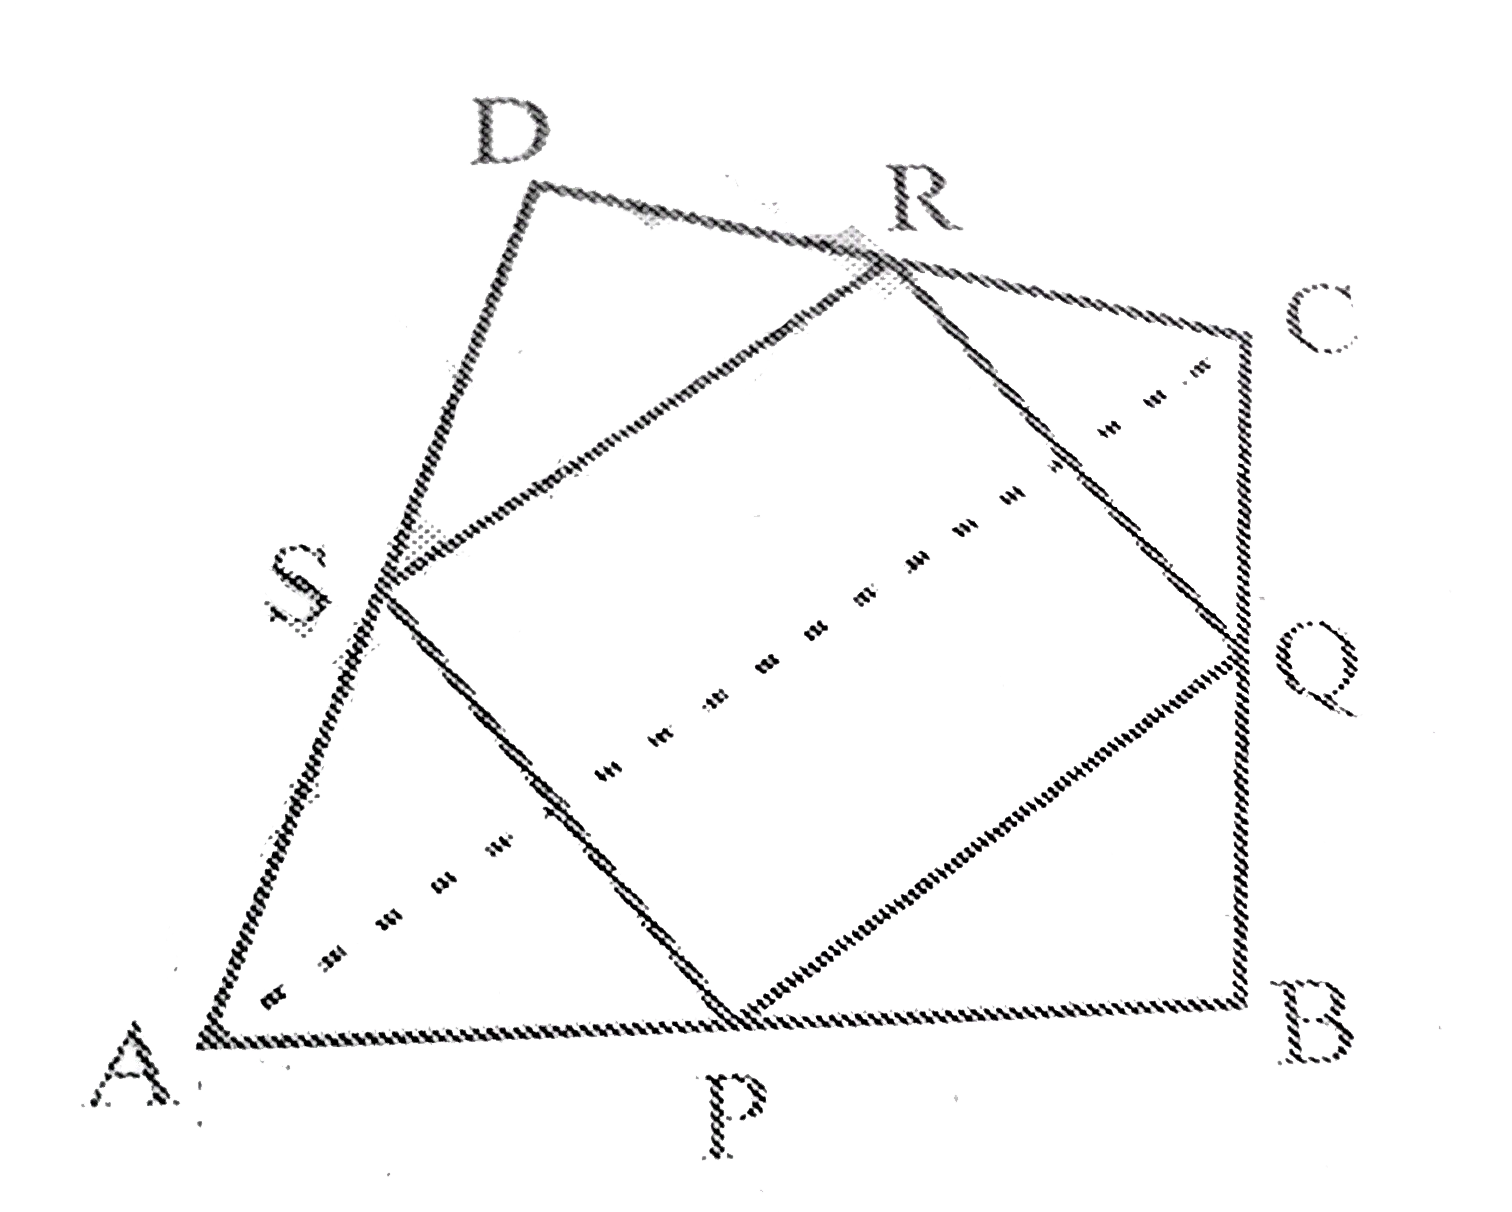 ABCD एक  चतुर्भुज  है जिसमें P, Q, R  और  S   क्रमश  :  भुजाओं AB, BC, CD  और  DA  में  मध्य - बिंदु  है।  AC  
 उसका  एक  विकर्ण  है।  दर्शाइए  कि     (i) SR||AC   और   SR=(1)/(2) AC  है    (ii)  PQ =SR  है |   (iii)  PQRS एक समांतर  चतुर्भुज  है।